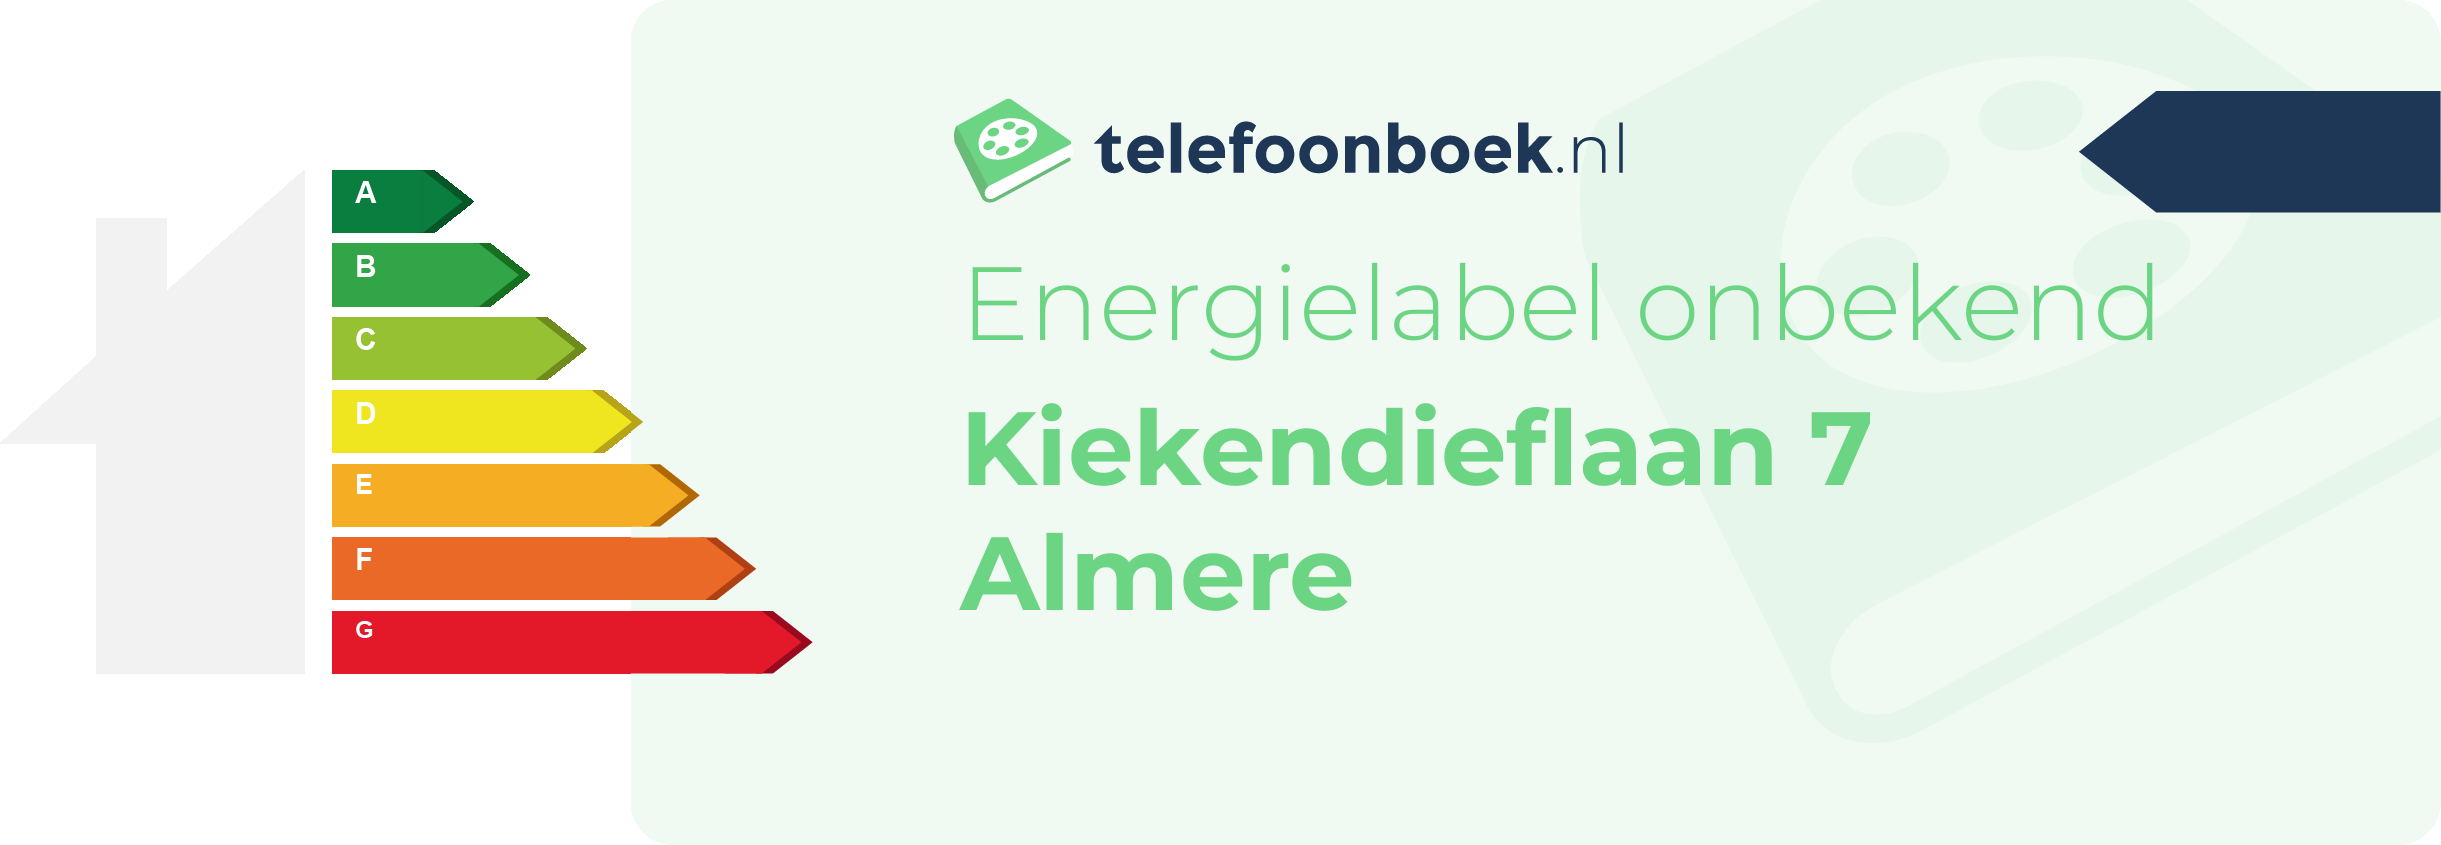 Energielabel Kiekendieflaan 7 Almere